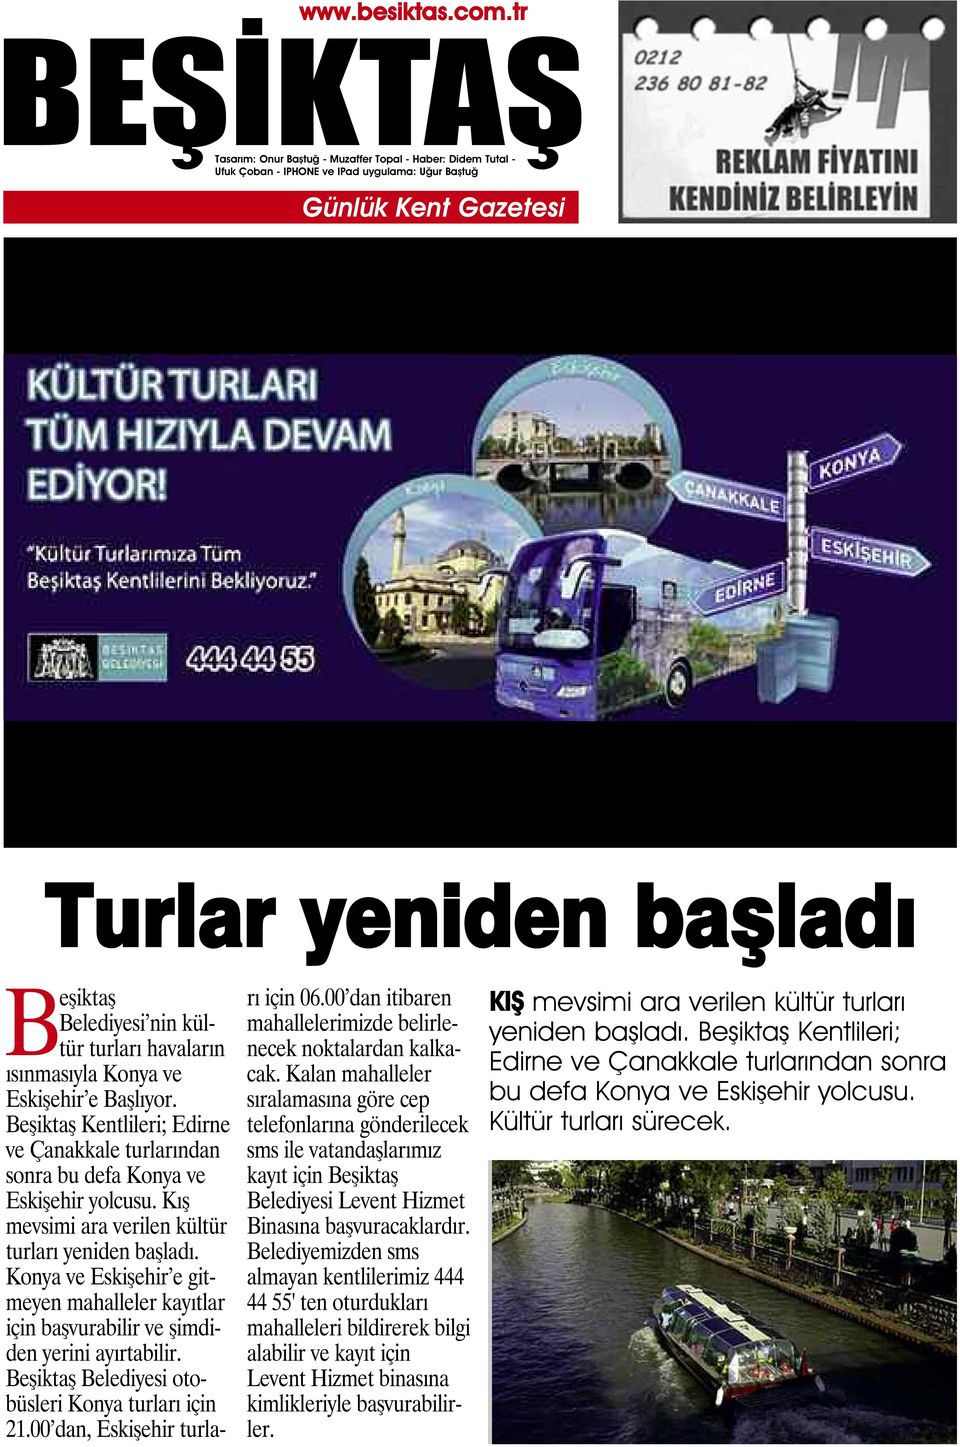 Konya ve Eskişehir e gitmeyen mahalleler kayıtlar için başvurabilir ve şimdiden yerini ayırtabilir. Beşiktaş Belediyesi otobüsleri Konya turları için 21.00 dan, Eskişehir turları için 06.